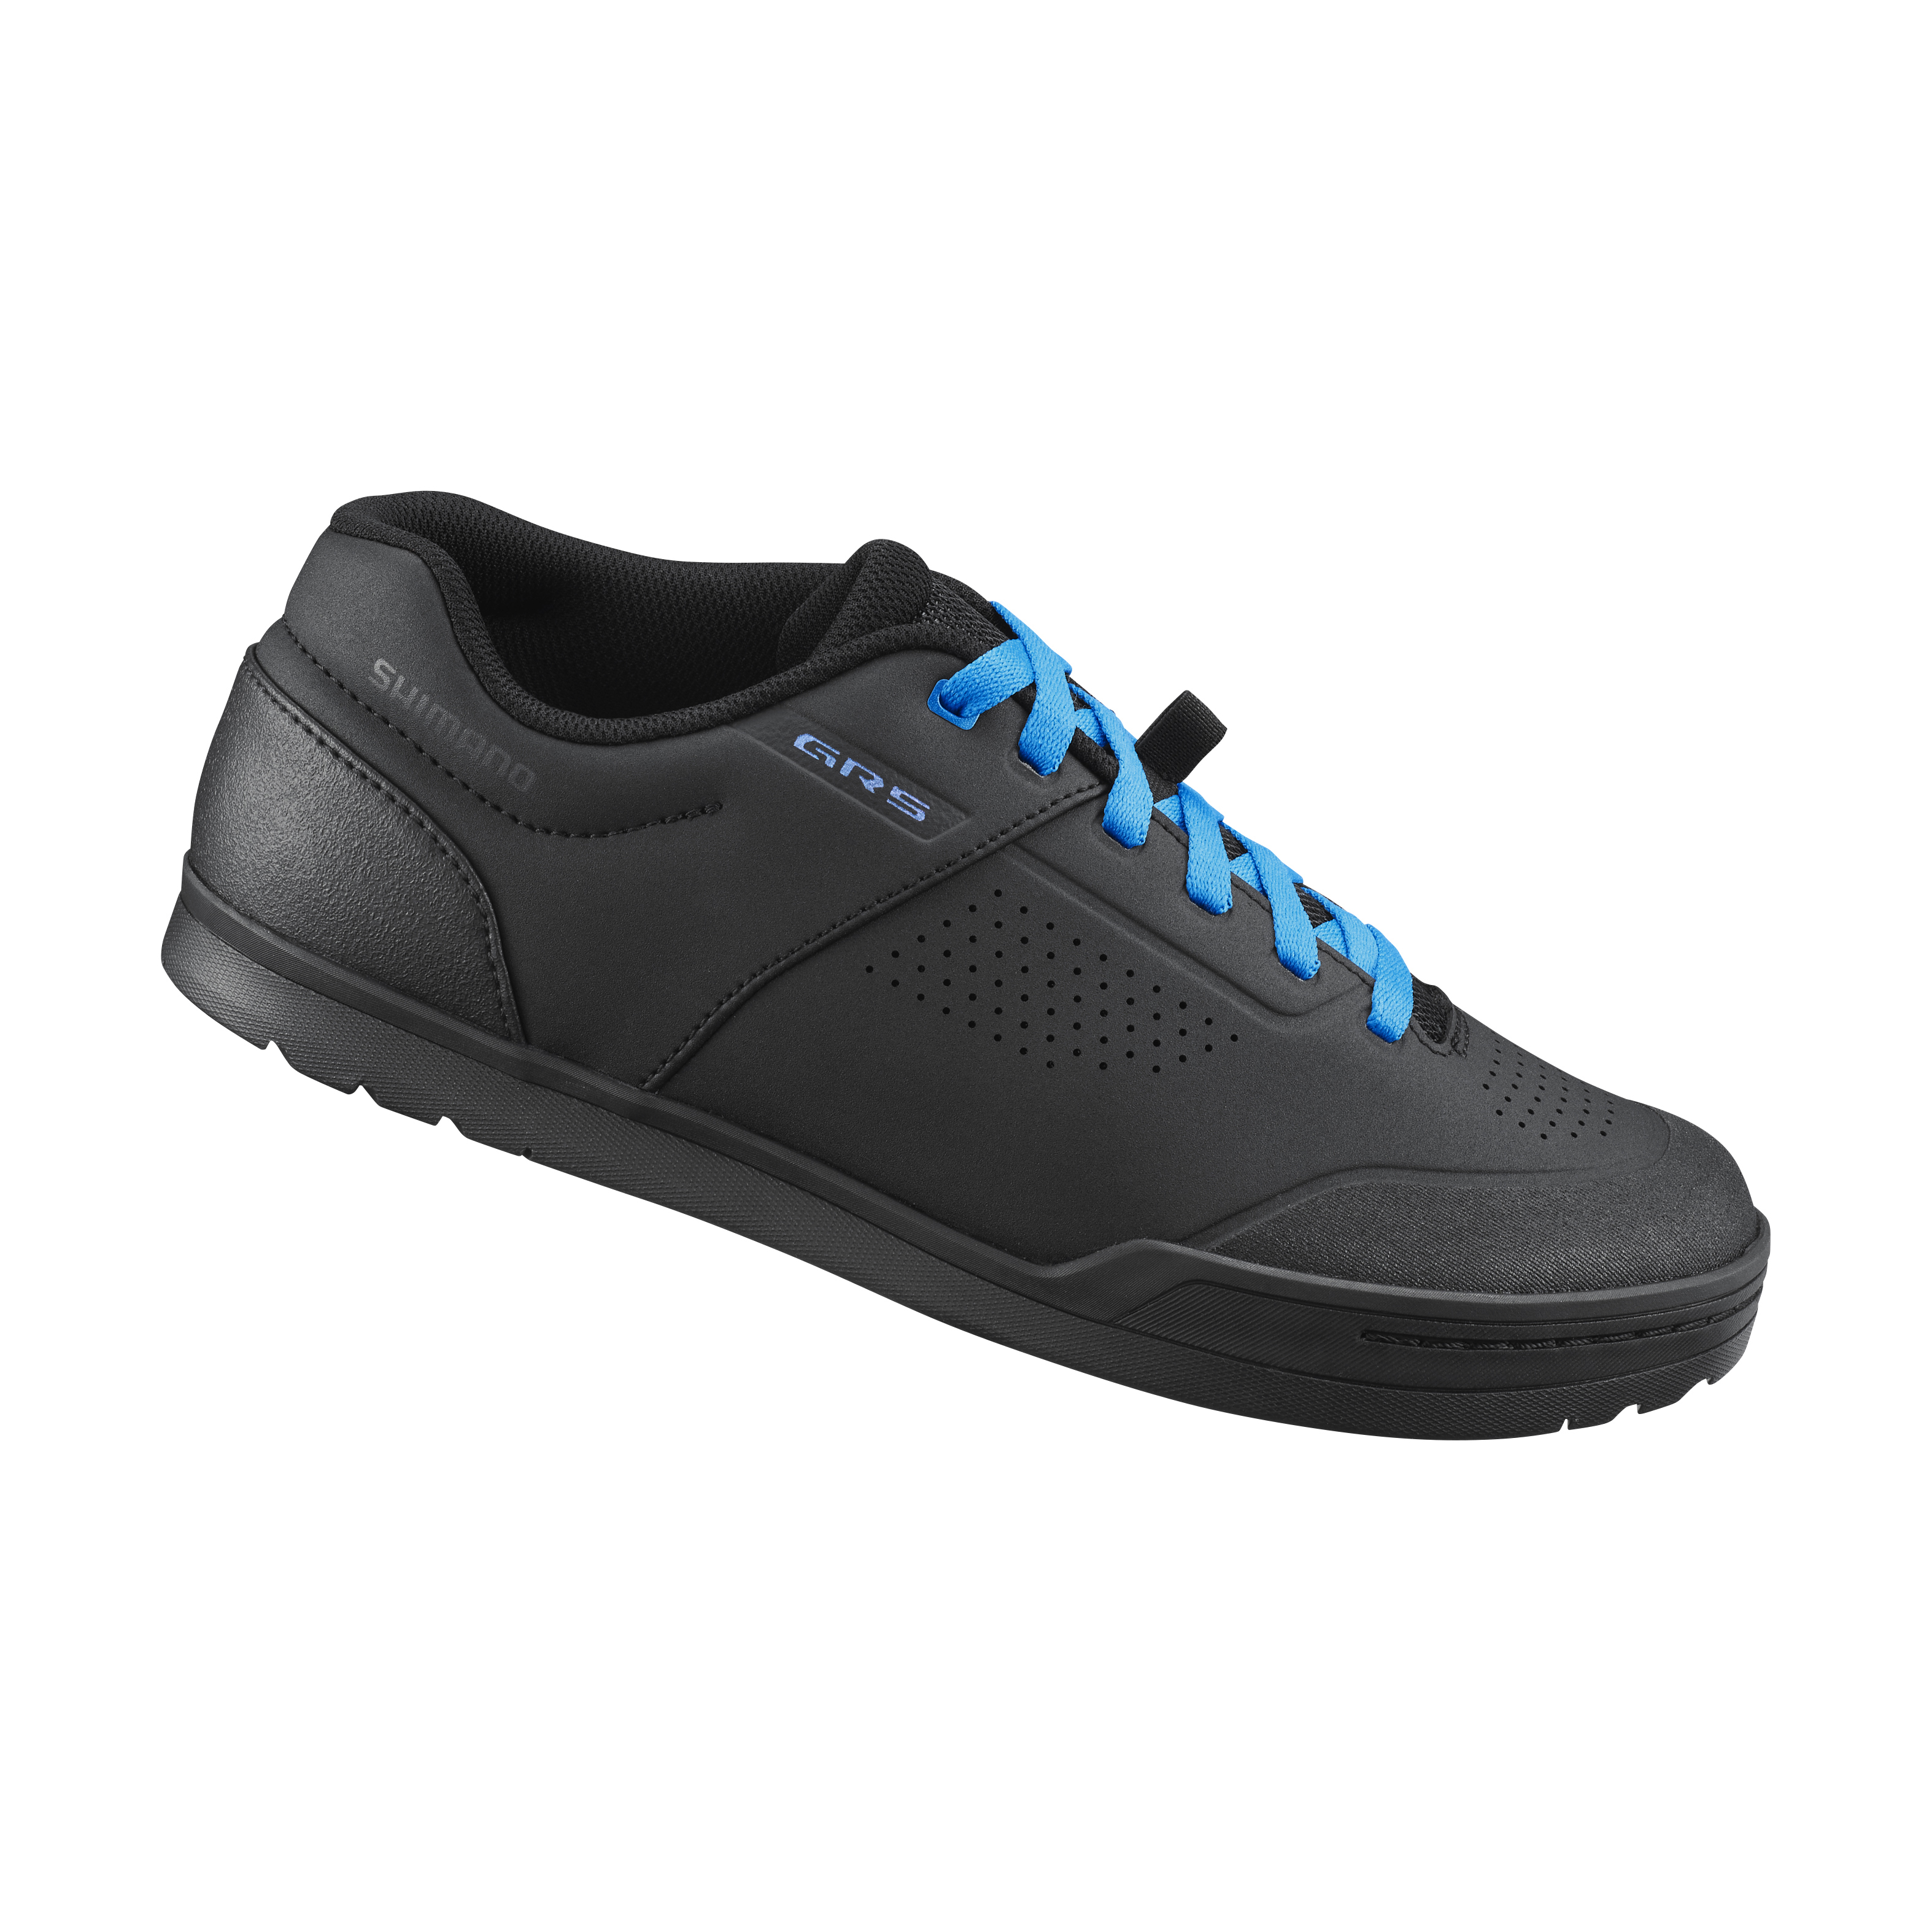 SHIMANO MTB obuv SH-GR501, černá/modrá, 39